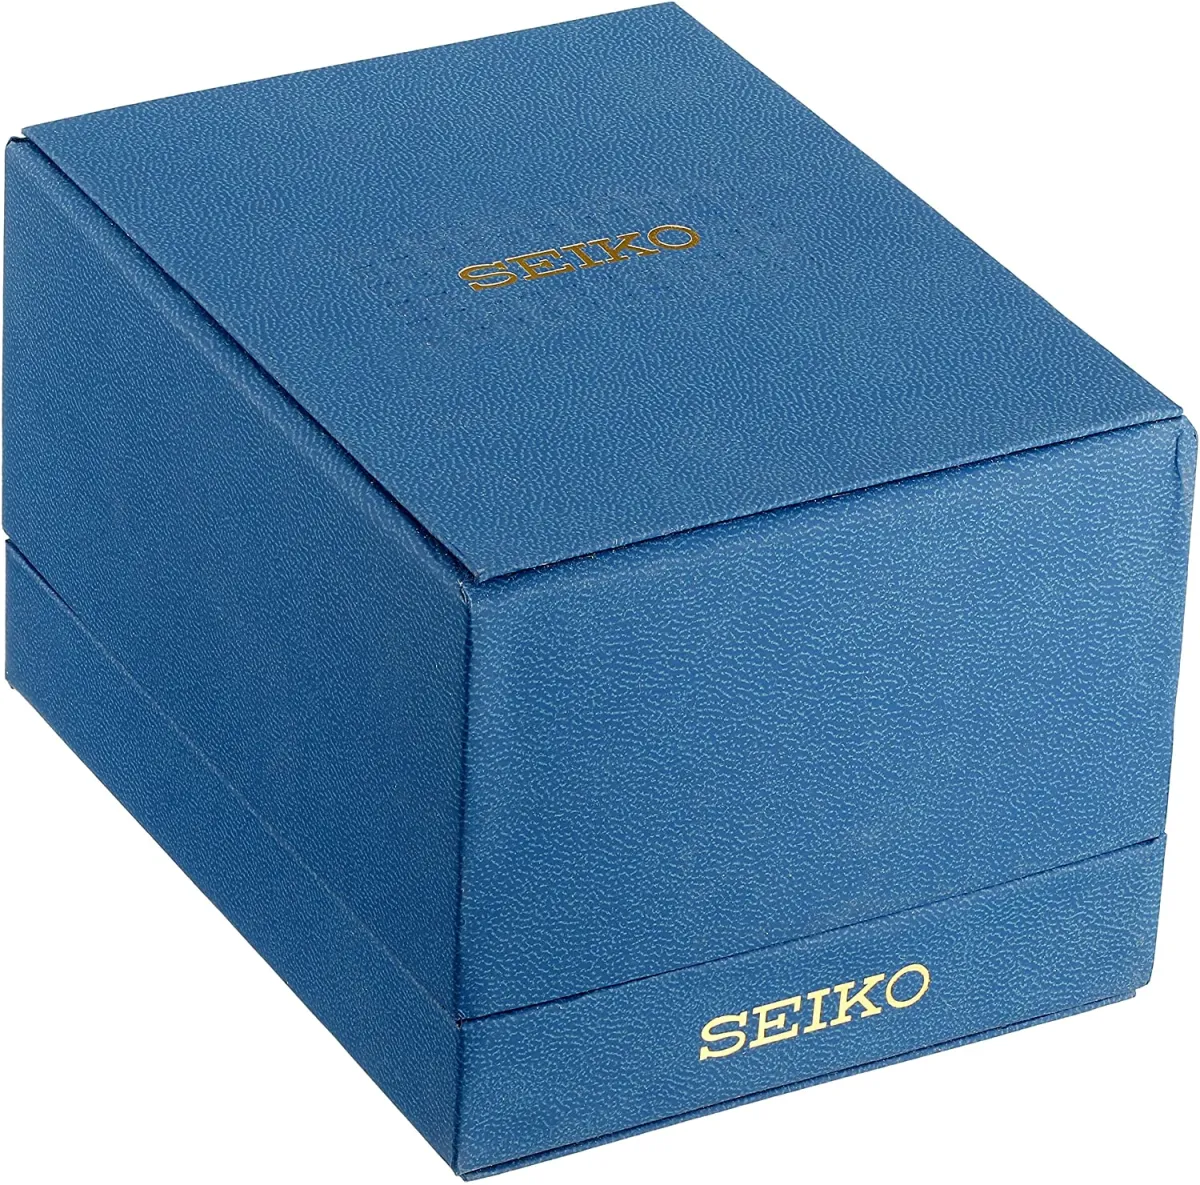 Đồng hồ Seiko cổ sẵn sàng (SEIKO S23159 Watch) Seiko S23159 Braille Strap  Watch [Hộp & Sách hướng dẫn của Nhà sản xuất + Người bán bảo hành một năm]  